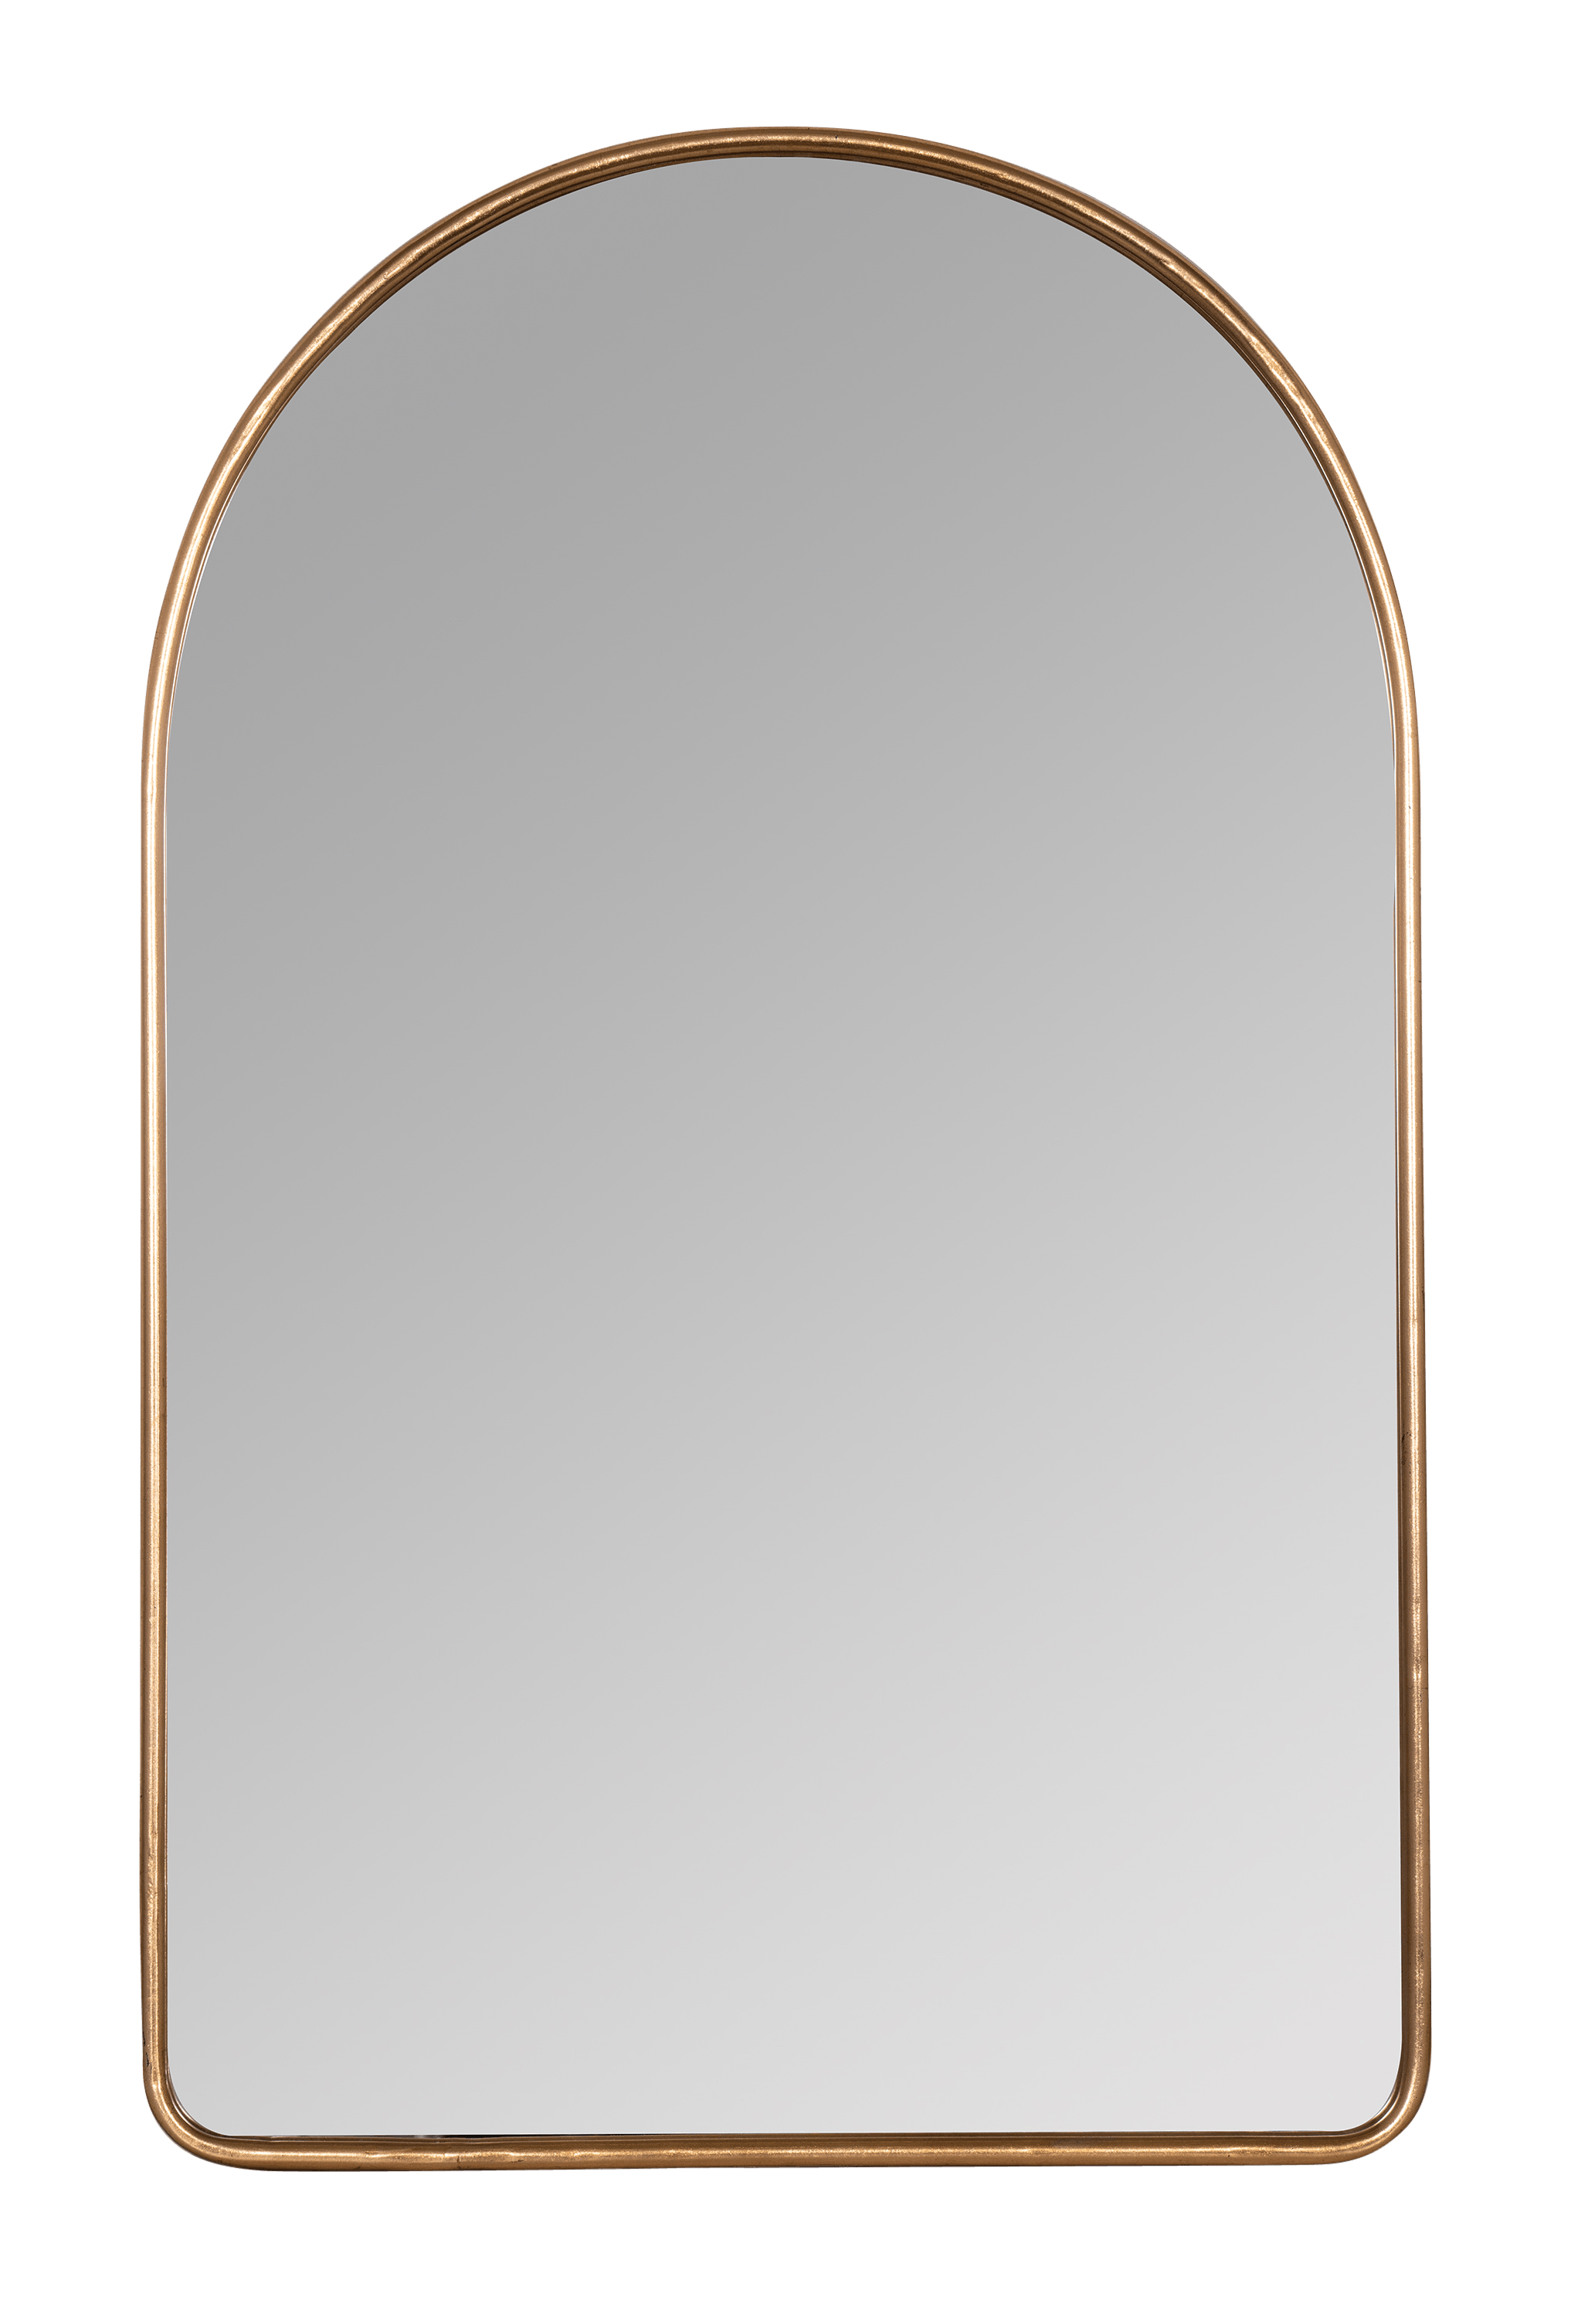 flynn mirror